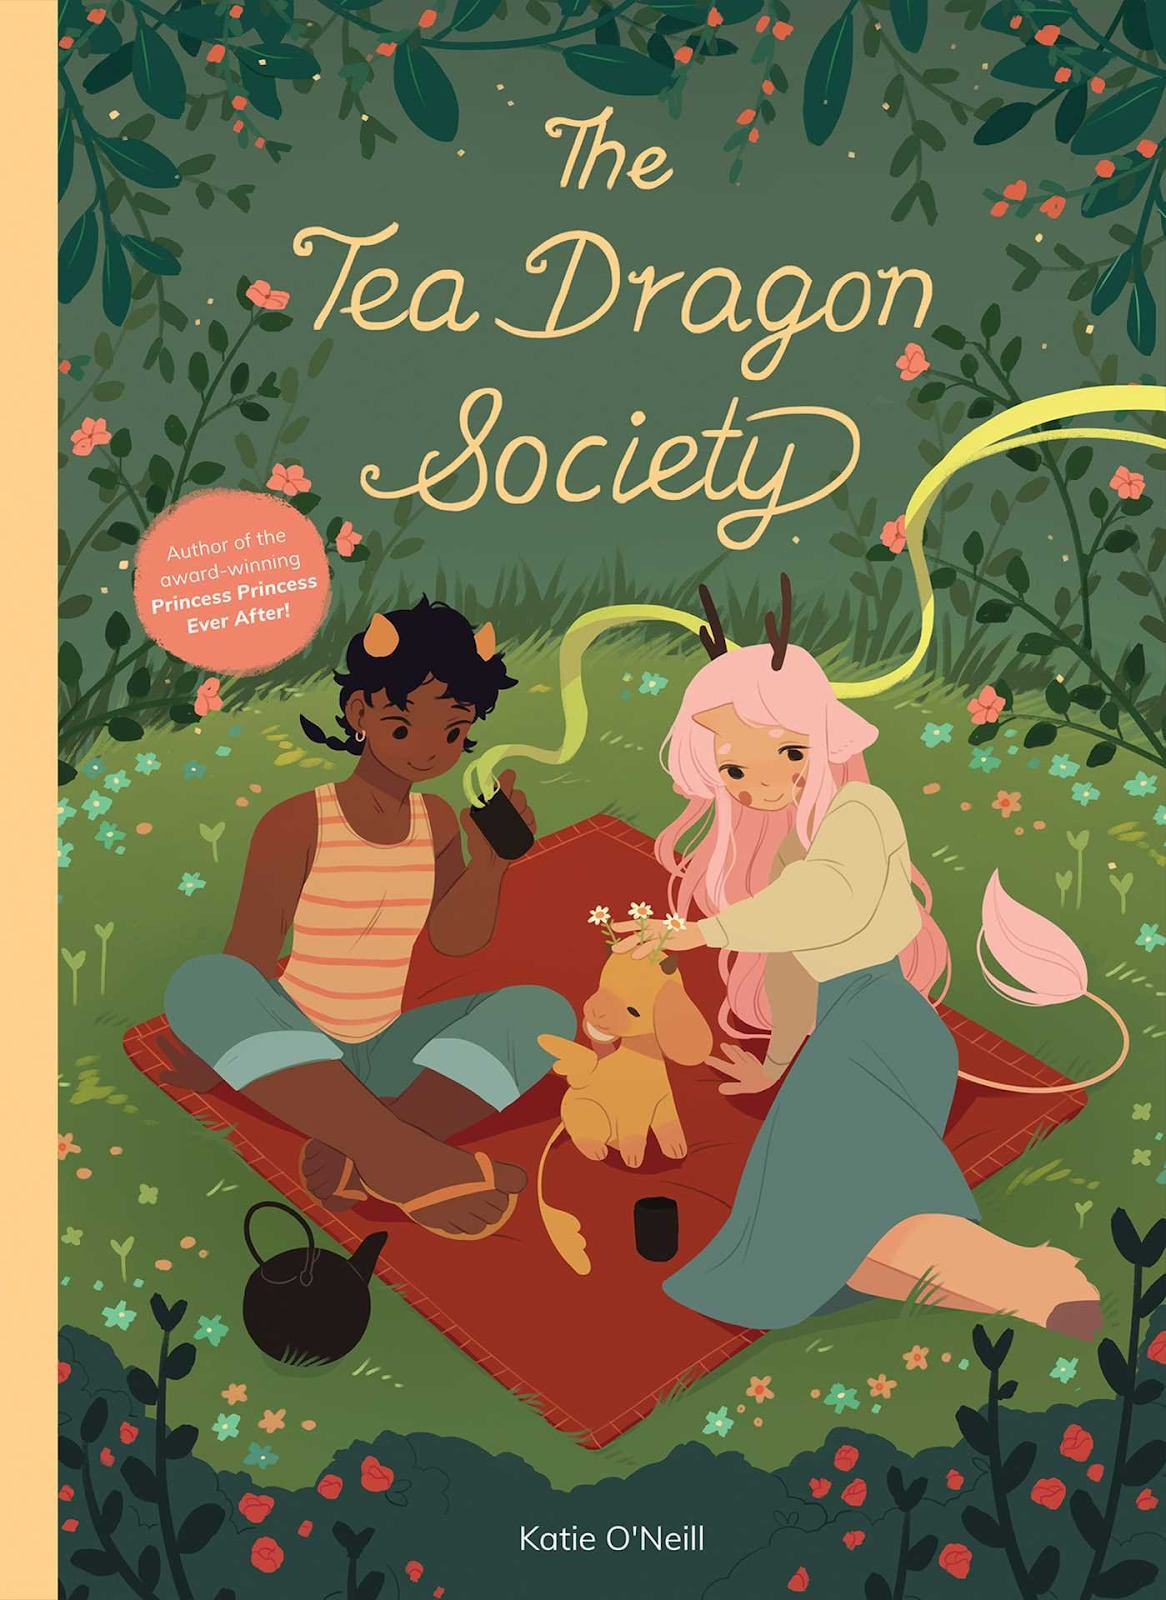 The Tea Dragon Society by Katie O'Neill